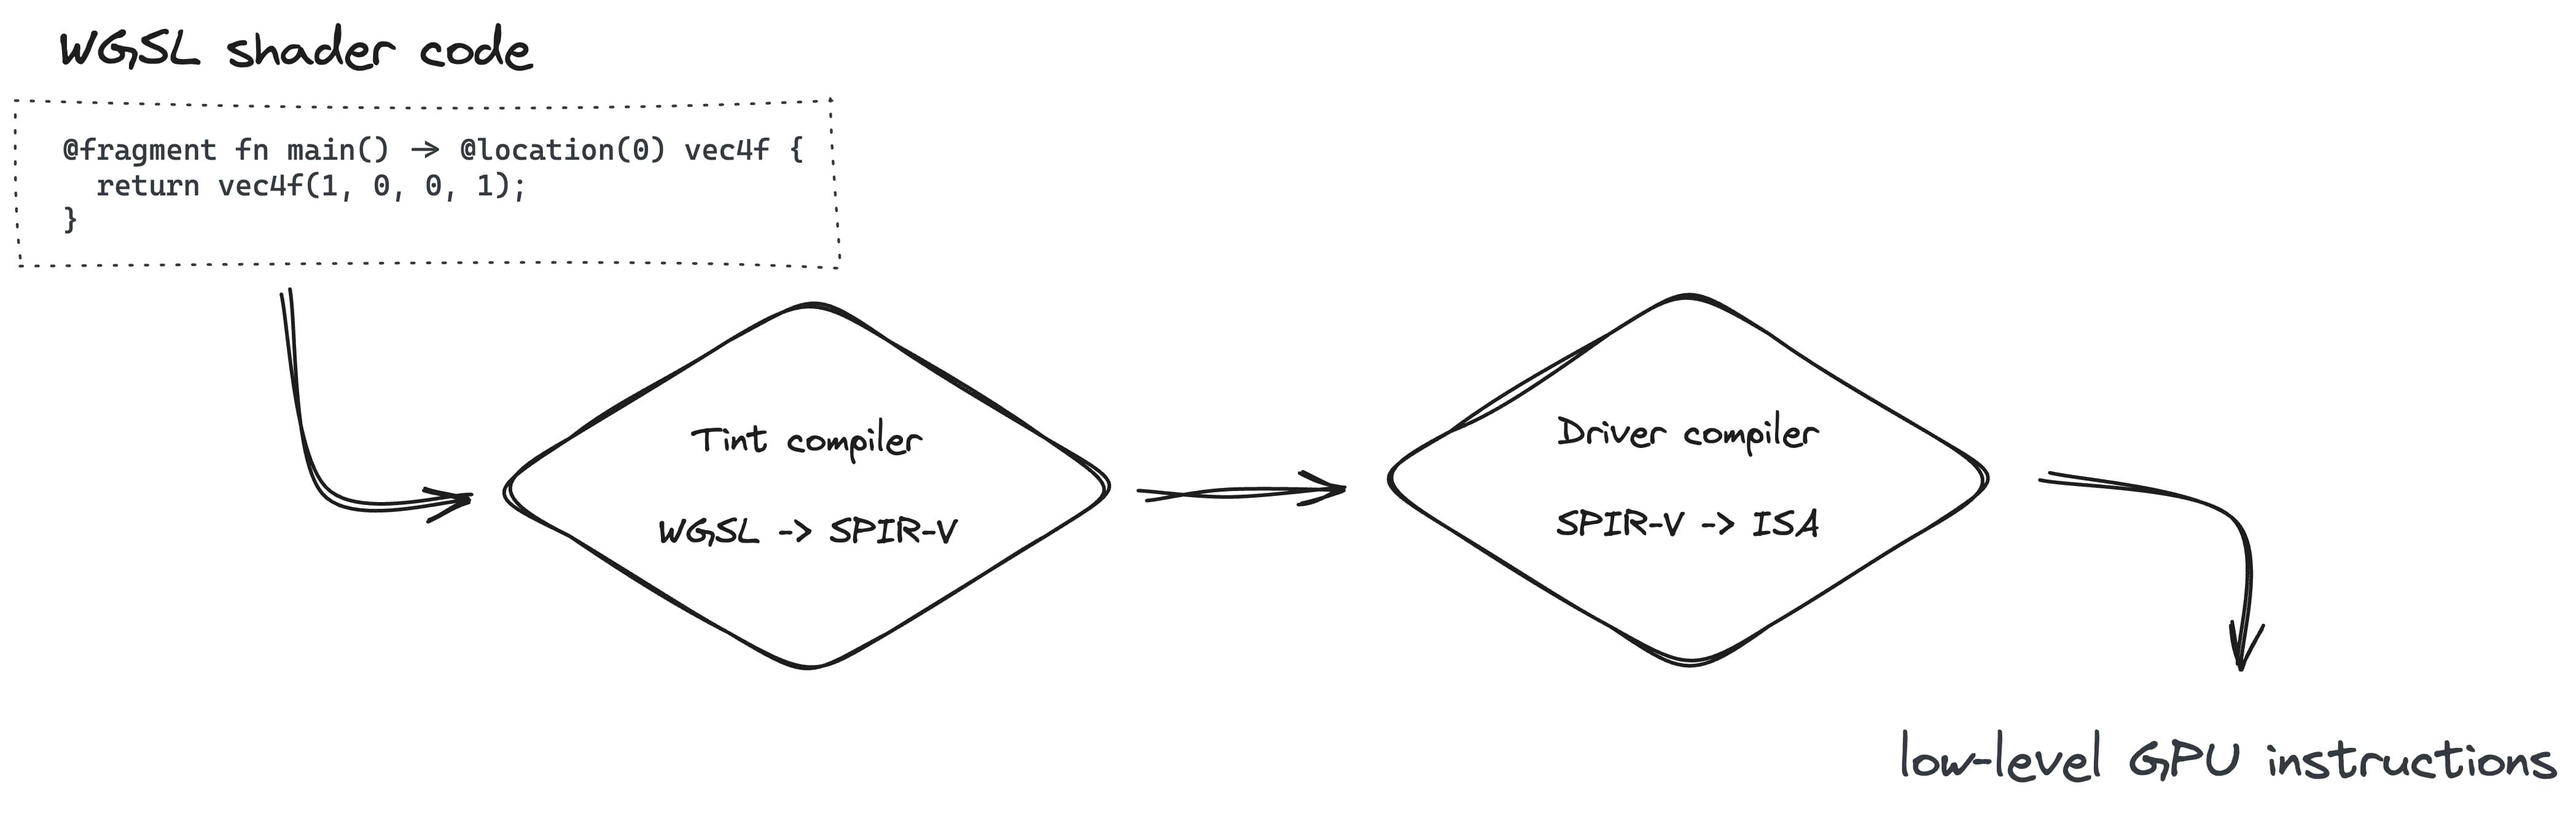 Pour créer un pipeline de rendu, vous devez convertir WGSL en SPIR-V avec le compilateur Teint, puis en ISA avec le compilateur de pilotes.